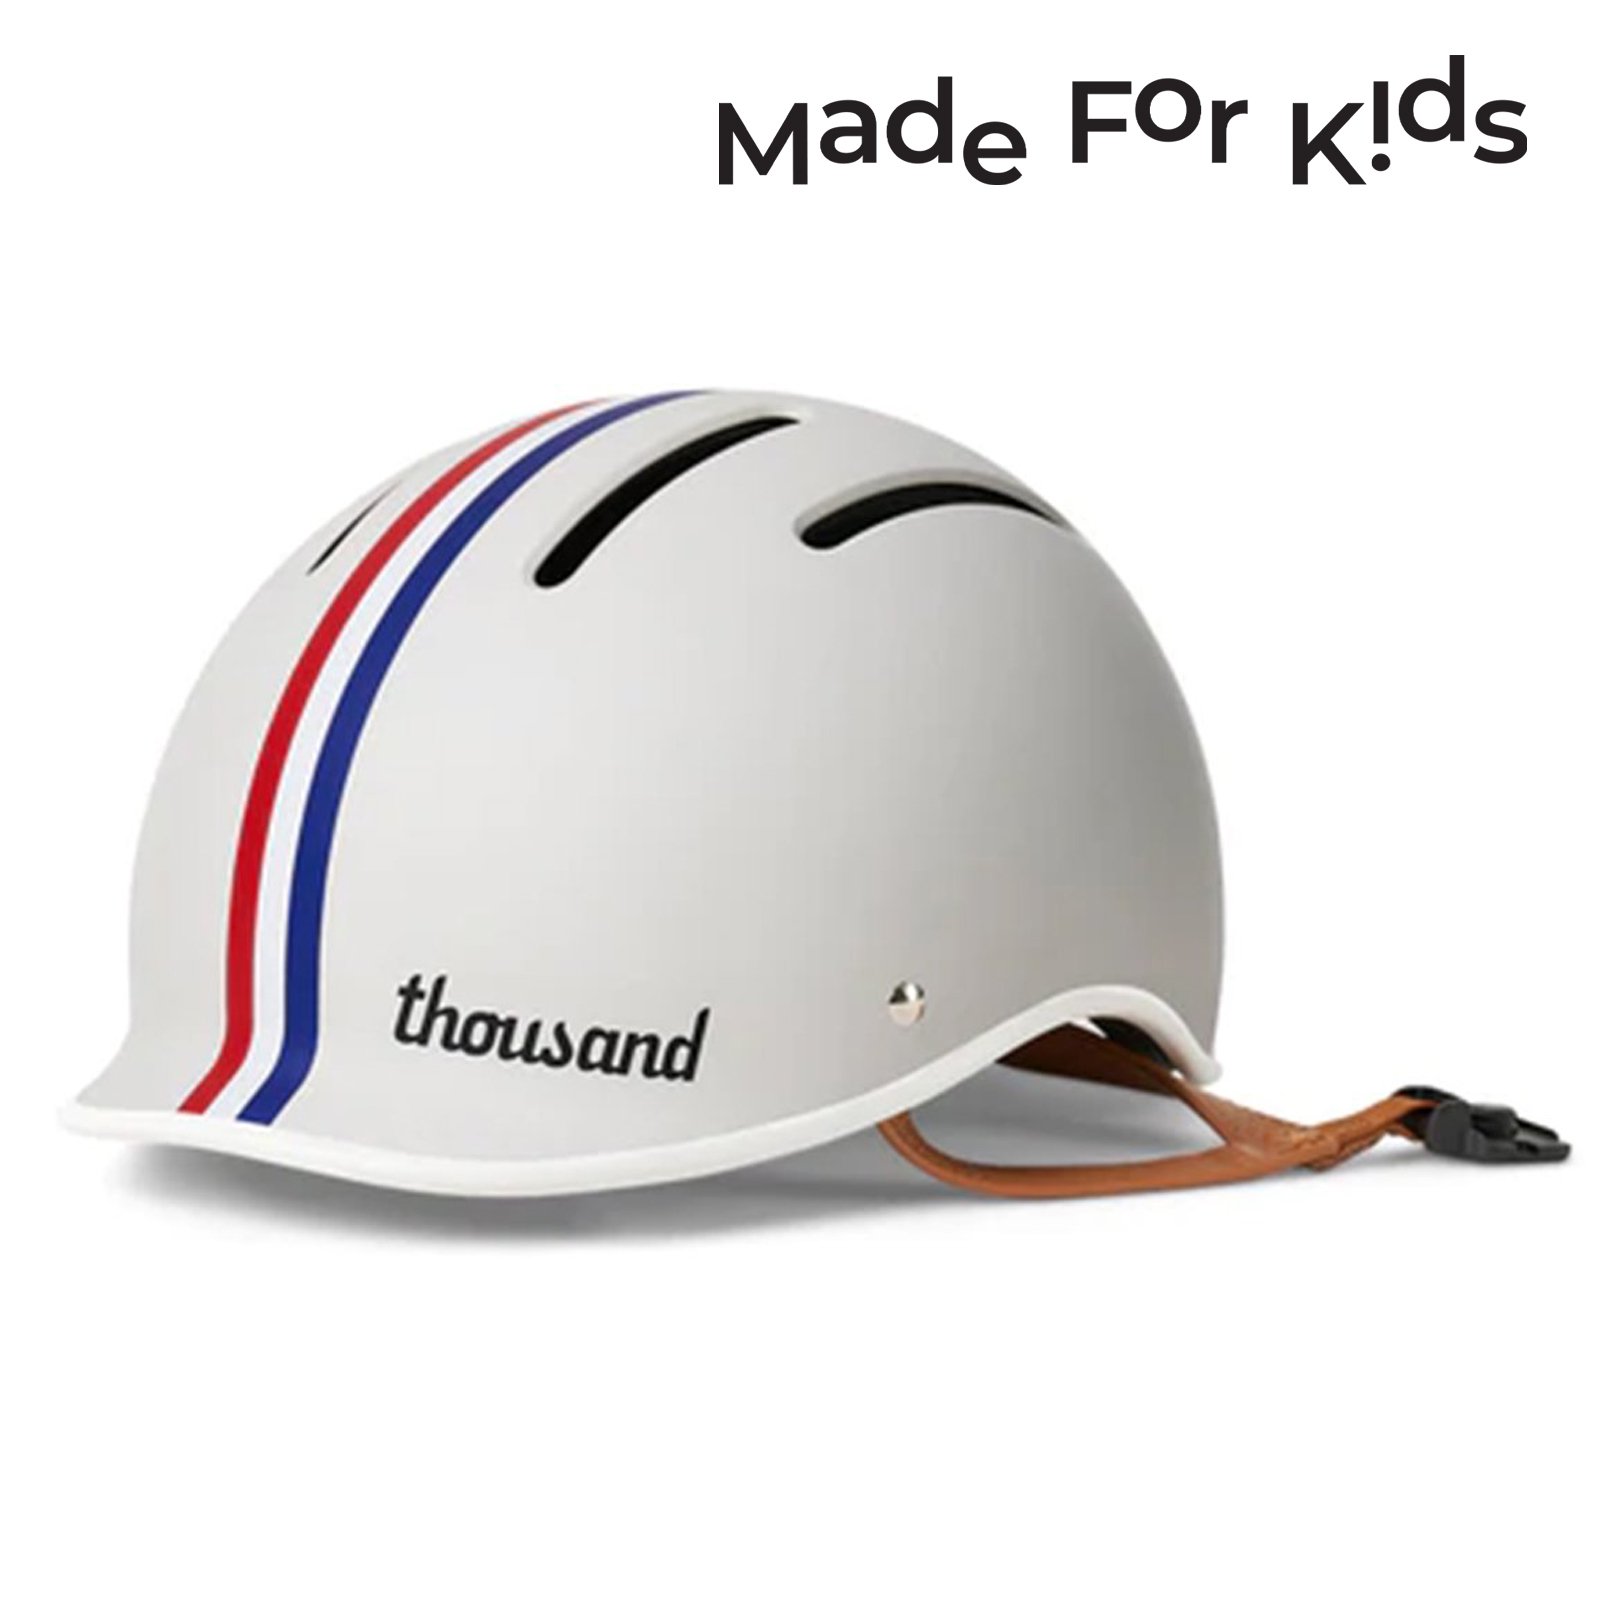 Thousand Thousand Jr. Kids Helmet Speedway Cream ParkSIDER